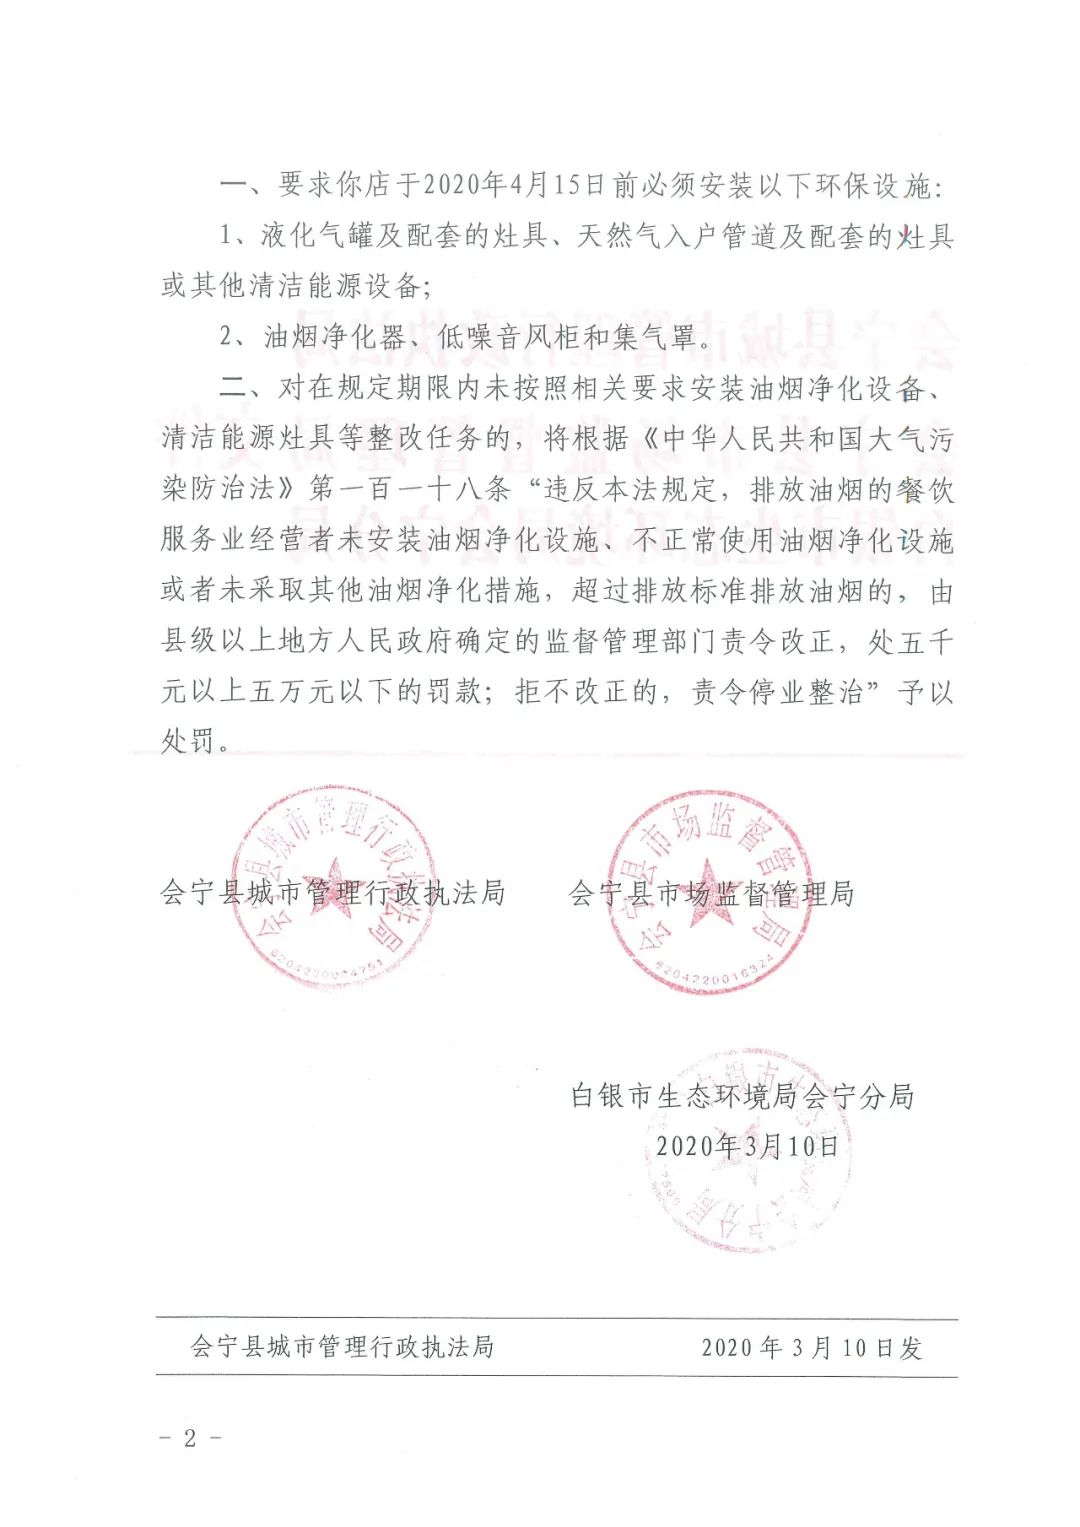 关于会宁县城区餐饮服务业限期安装油烟净化设备、清洁能源灶具的通知